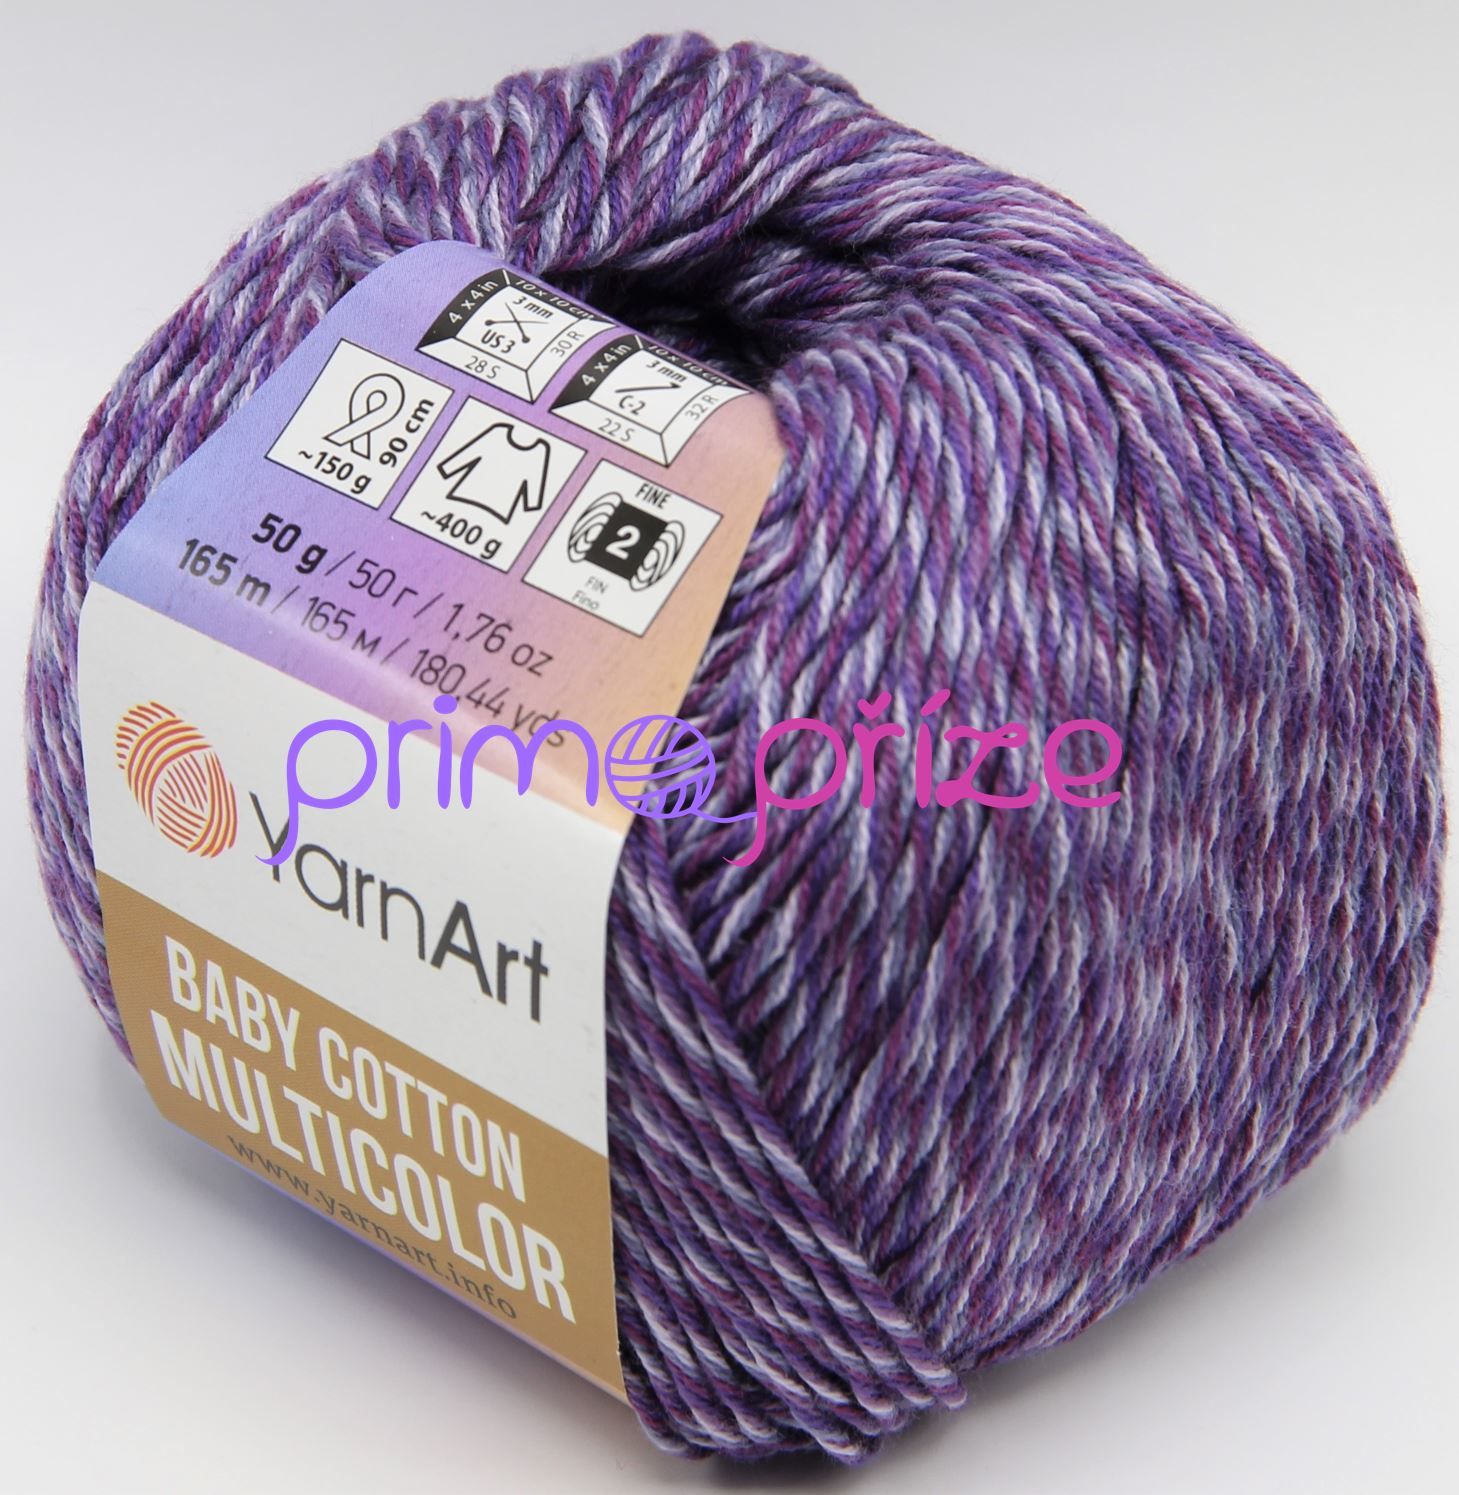 YarnArt Baby Cotton Multicolor 5218